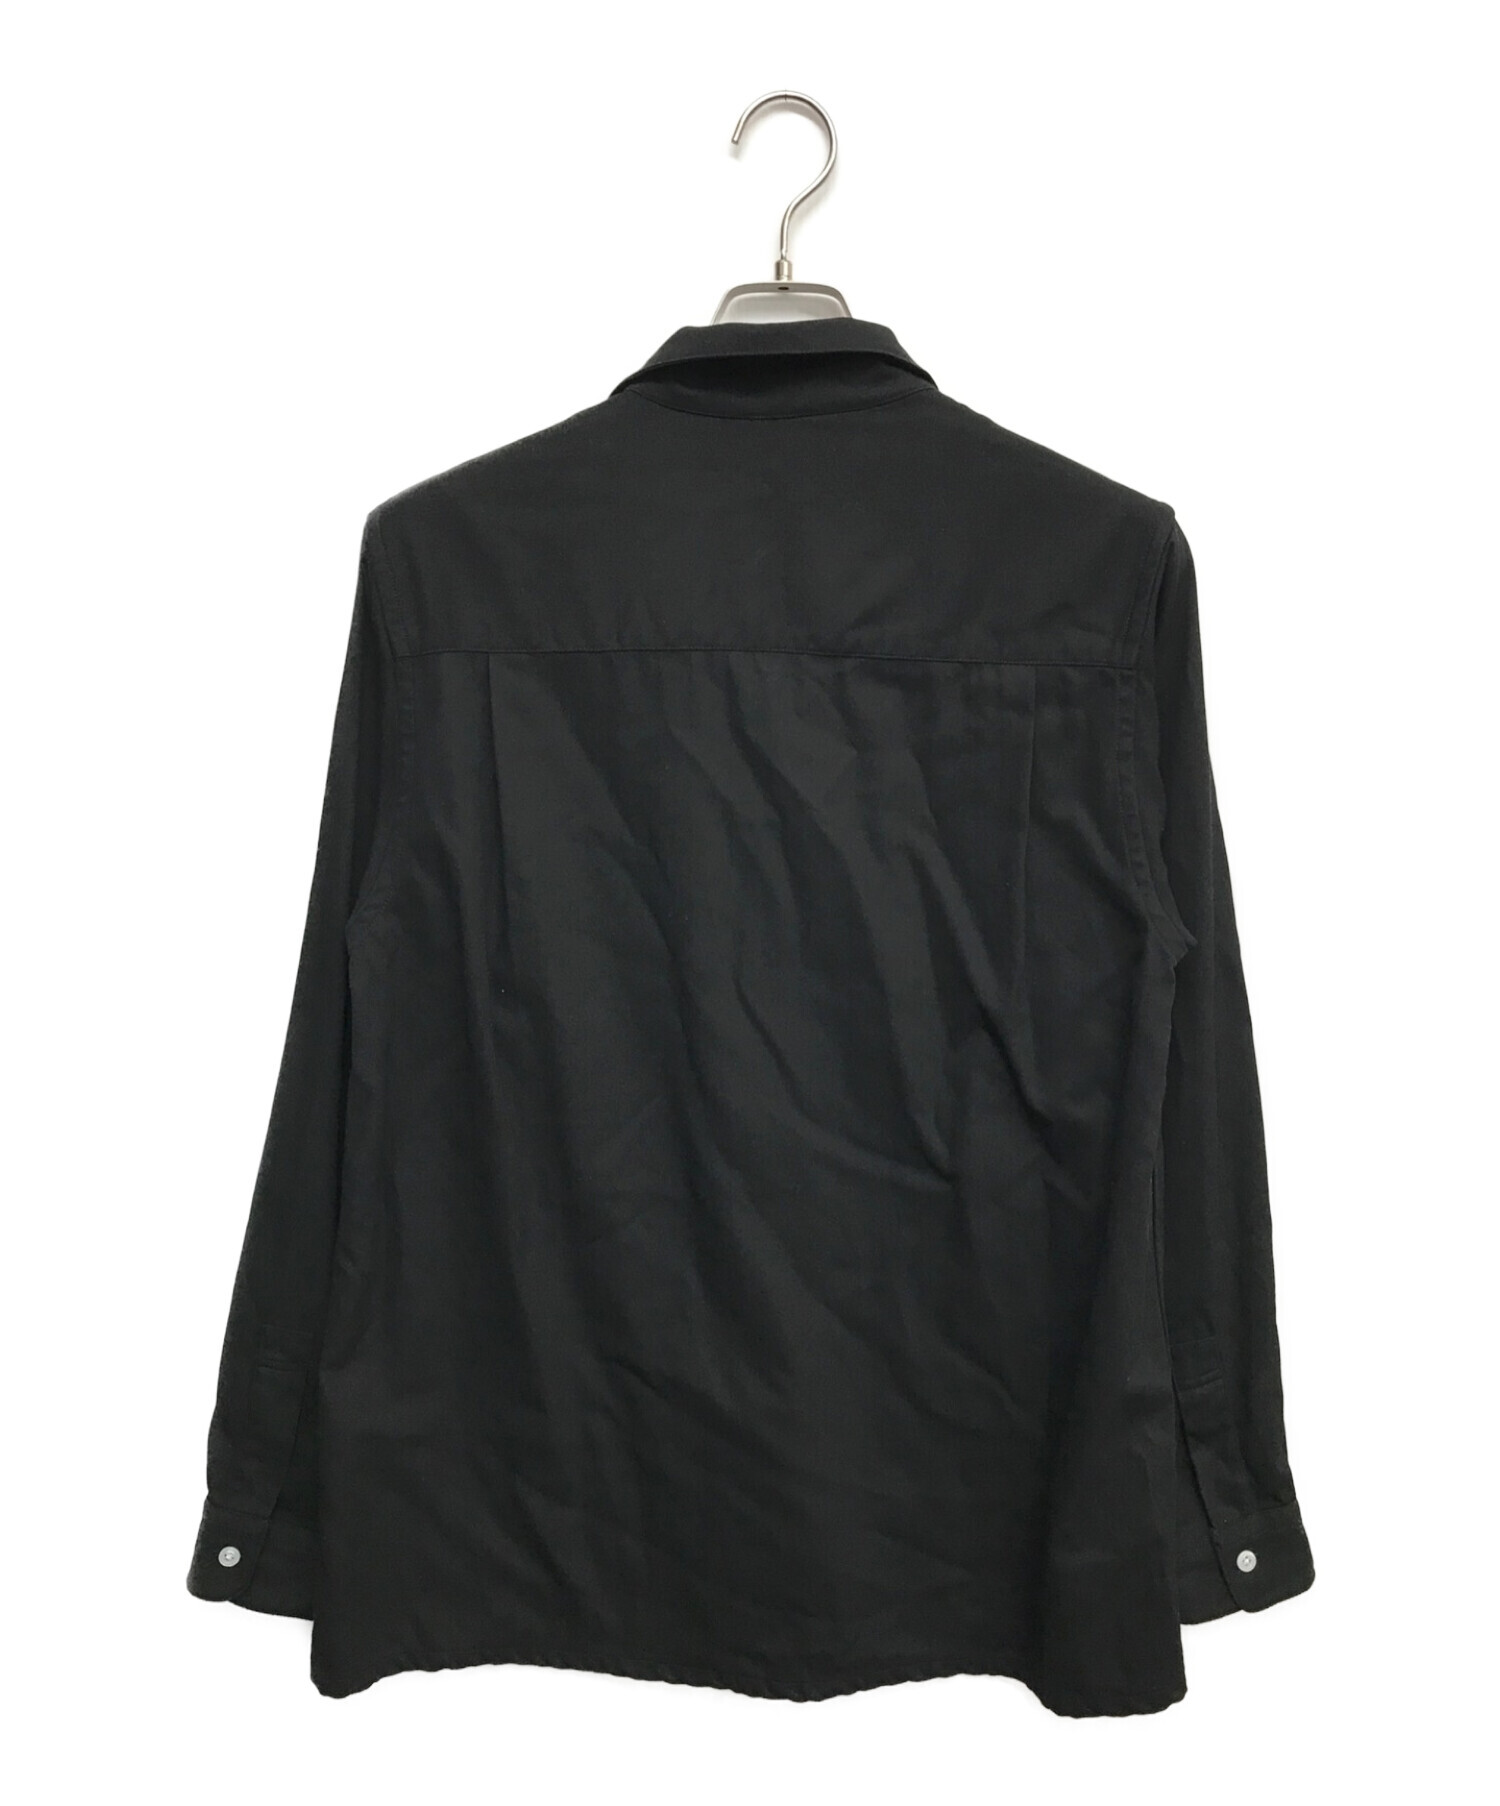 STEVEN ALAN (スティーブンアラン) オープンカラーシャツ ブラック サイズ:L